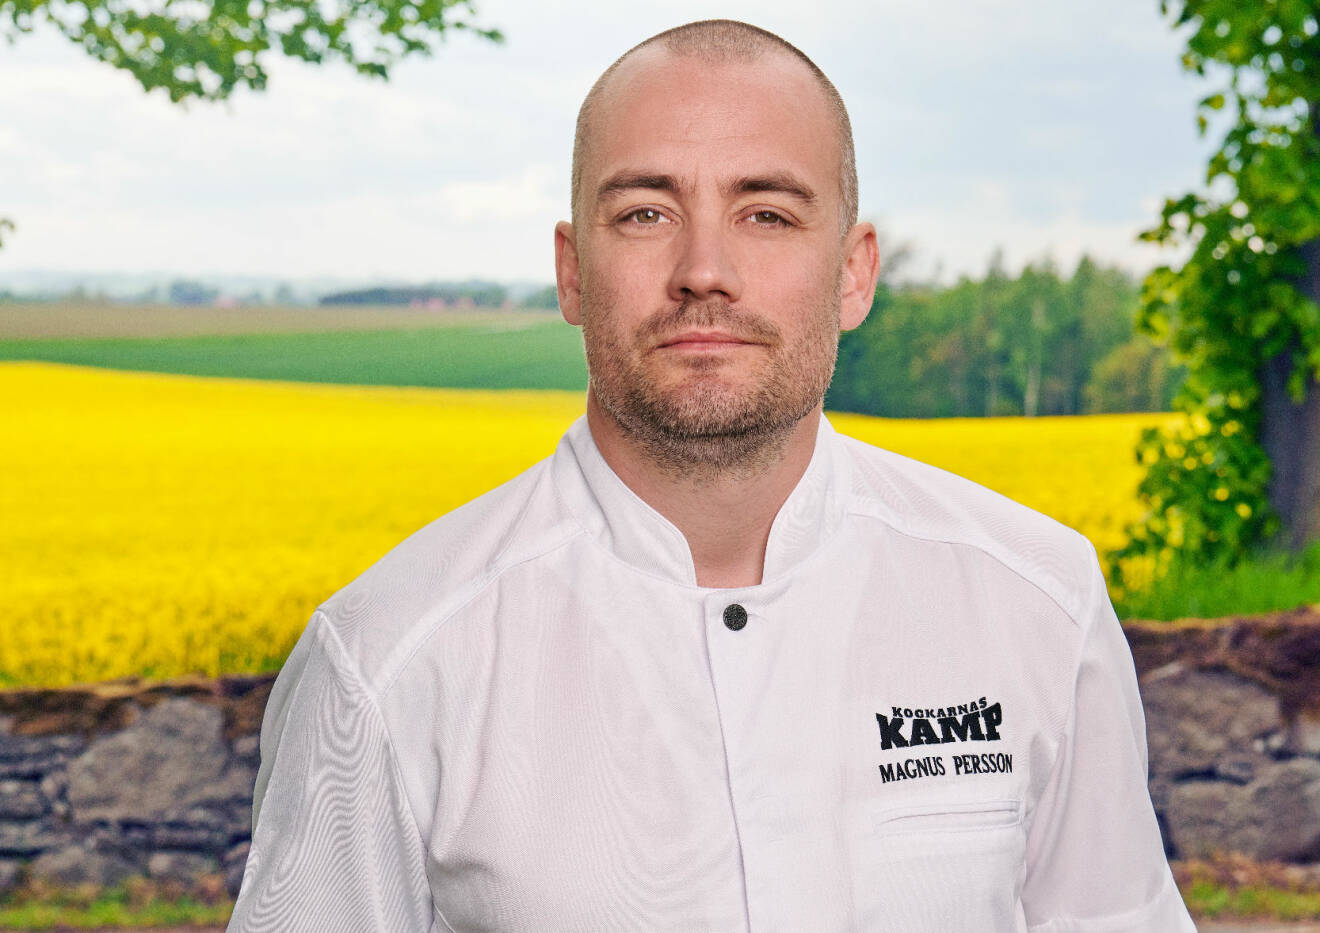 Stjärnkocken Magnus Persson framför et gult blommande rapsfält.